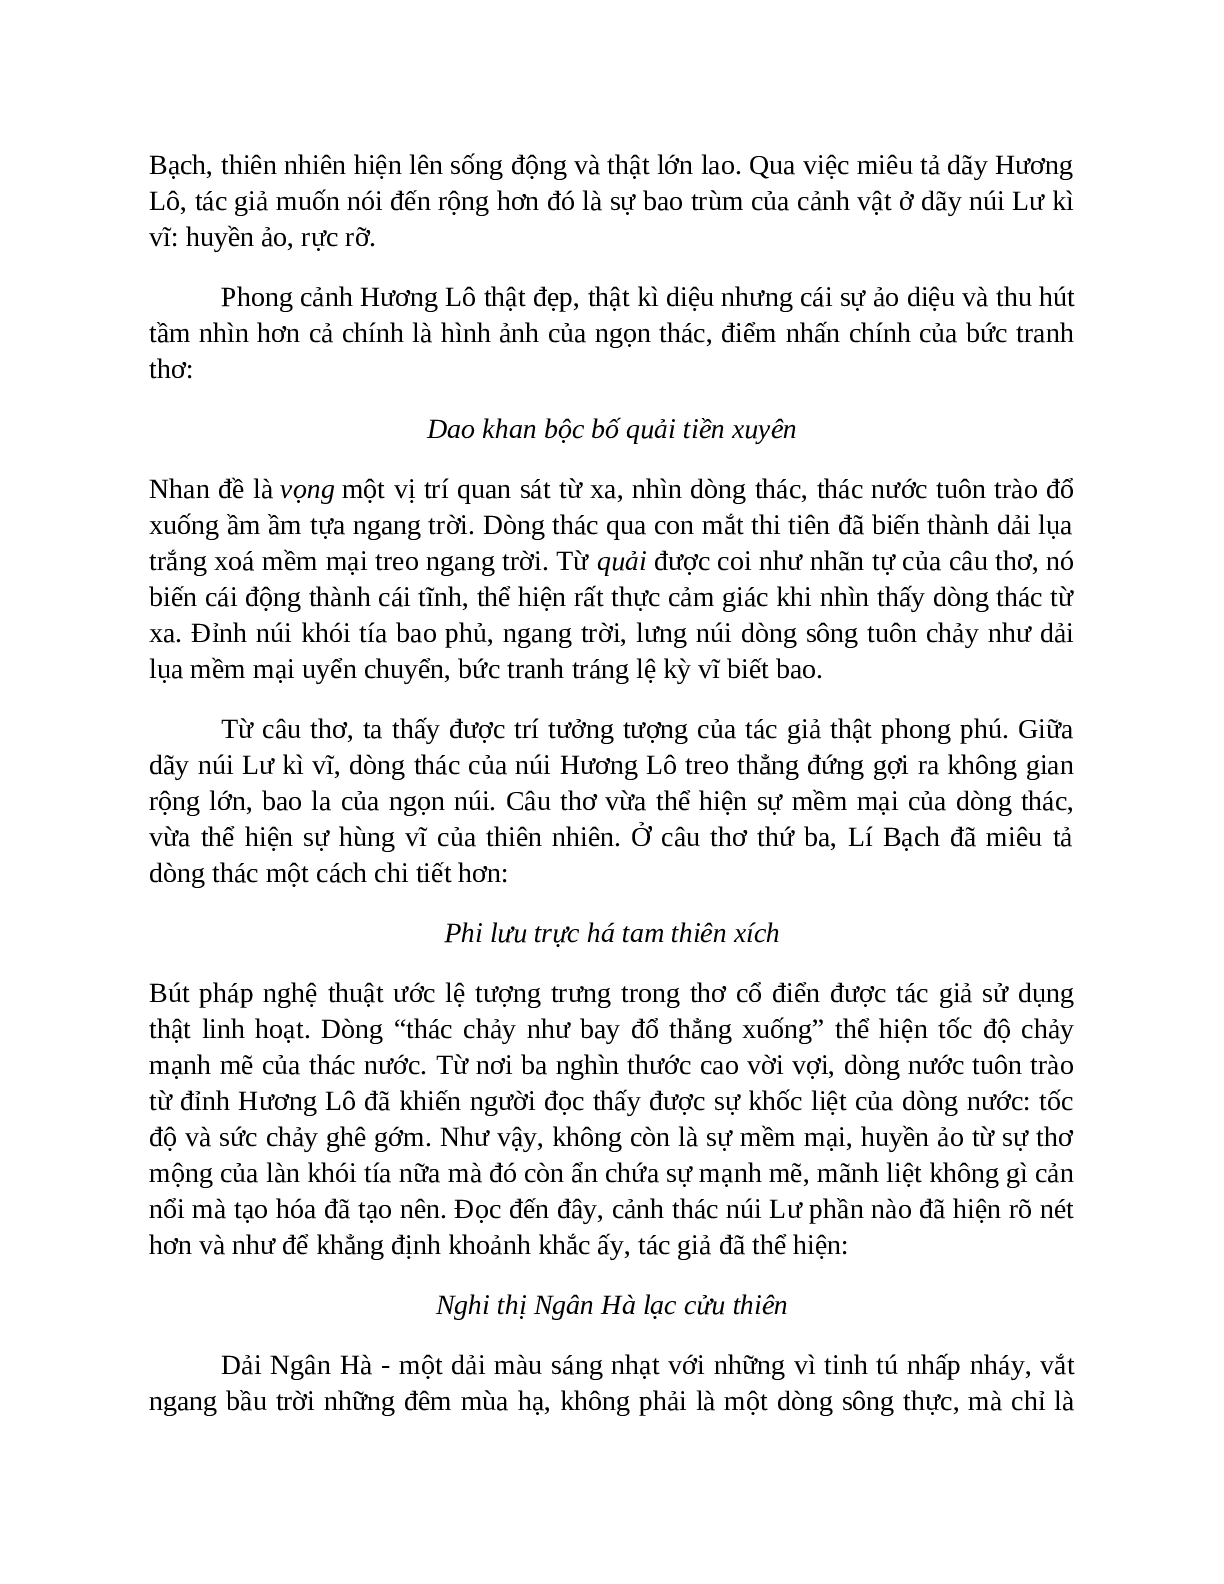 Sơ đồ tư duy bài Xa ngắm thác núi Lư dễ nhớ, ngắn nhất - Ngữ văn lớp 7 (trang 5)